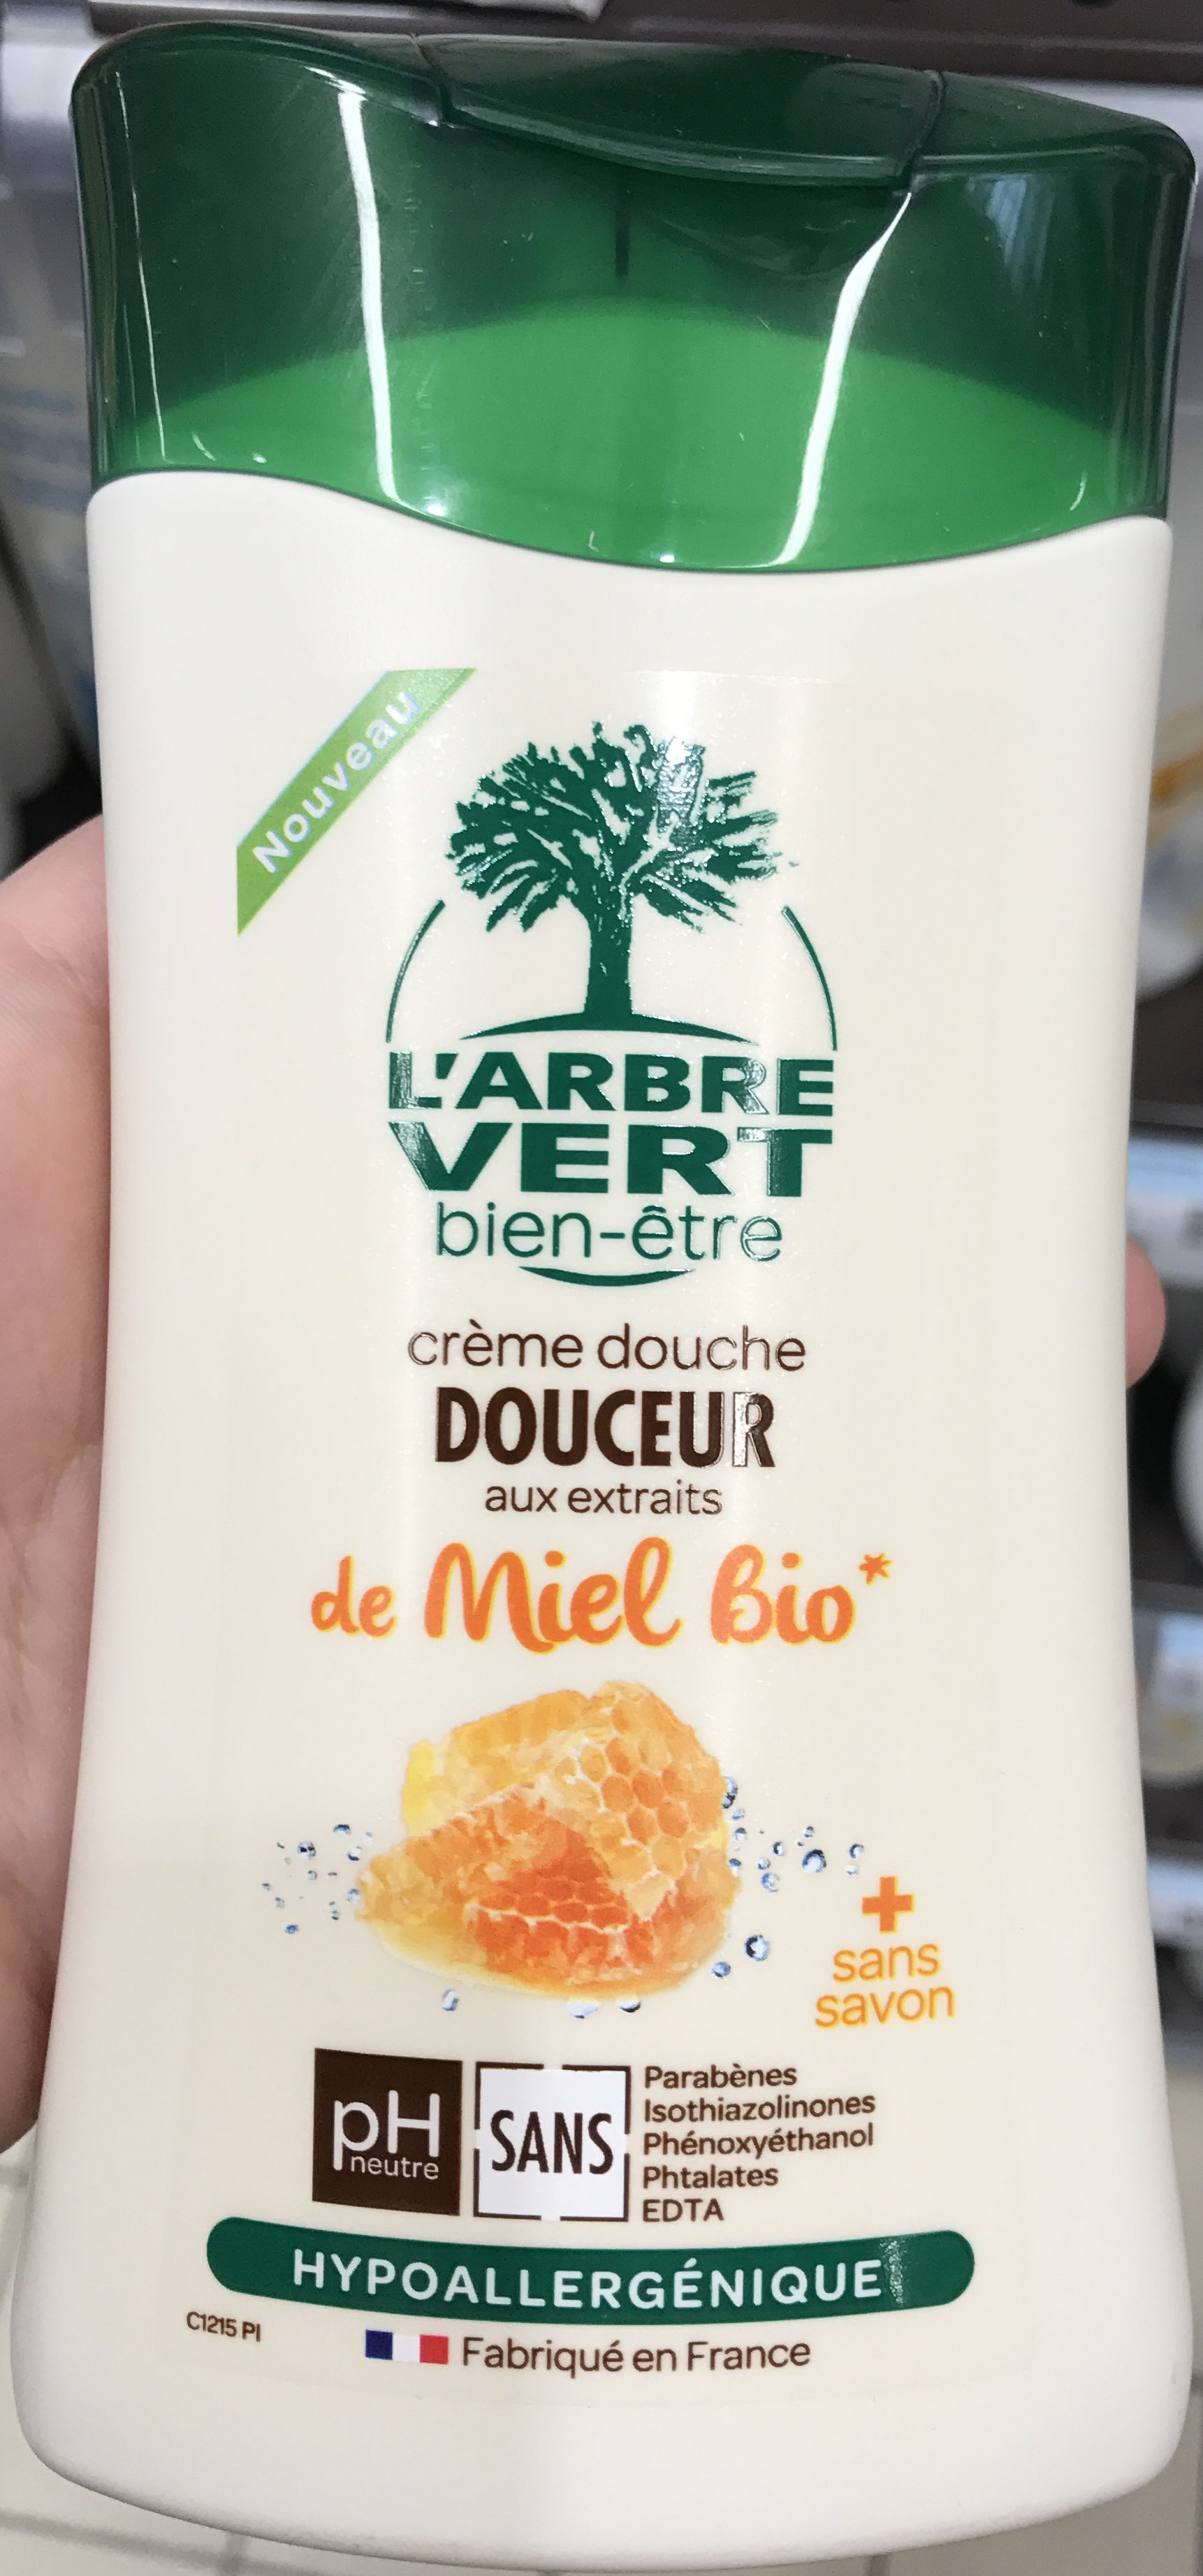 Crème douche Douceur aux extraits de Miel Bio - Product - fr